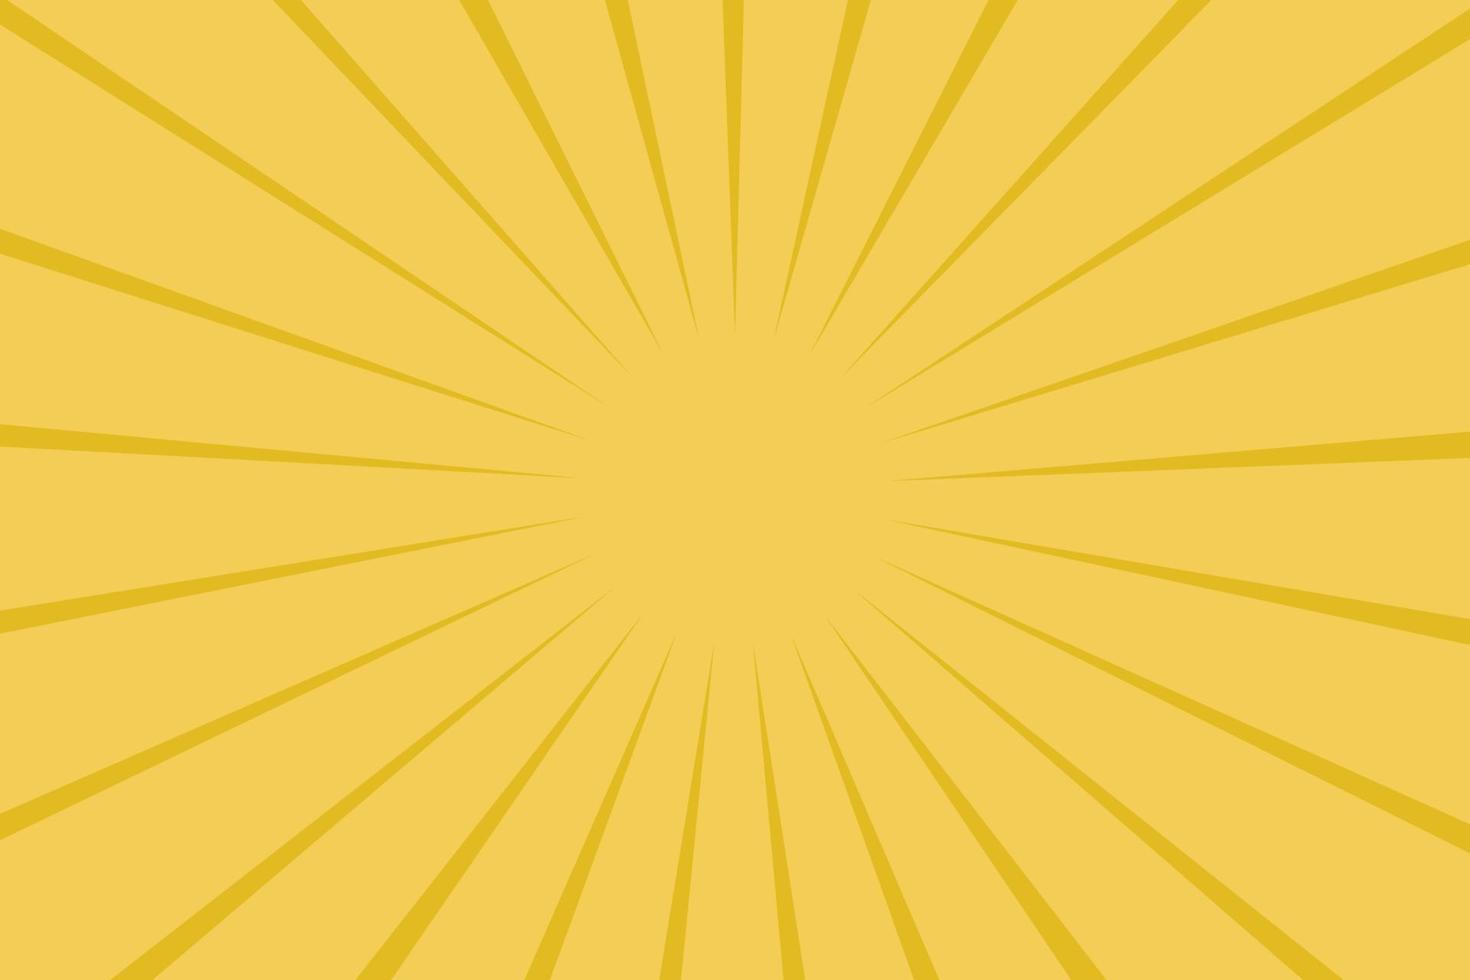 padrão de linha dourada sobre fundo dourado, linhas retas douradas com o centro da imagem em destaque, imagem de fundo para trabalho de outdoor vetor